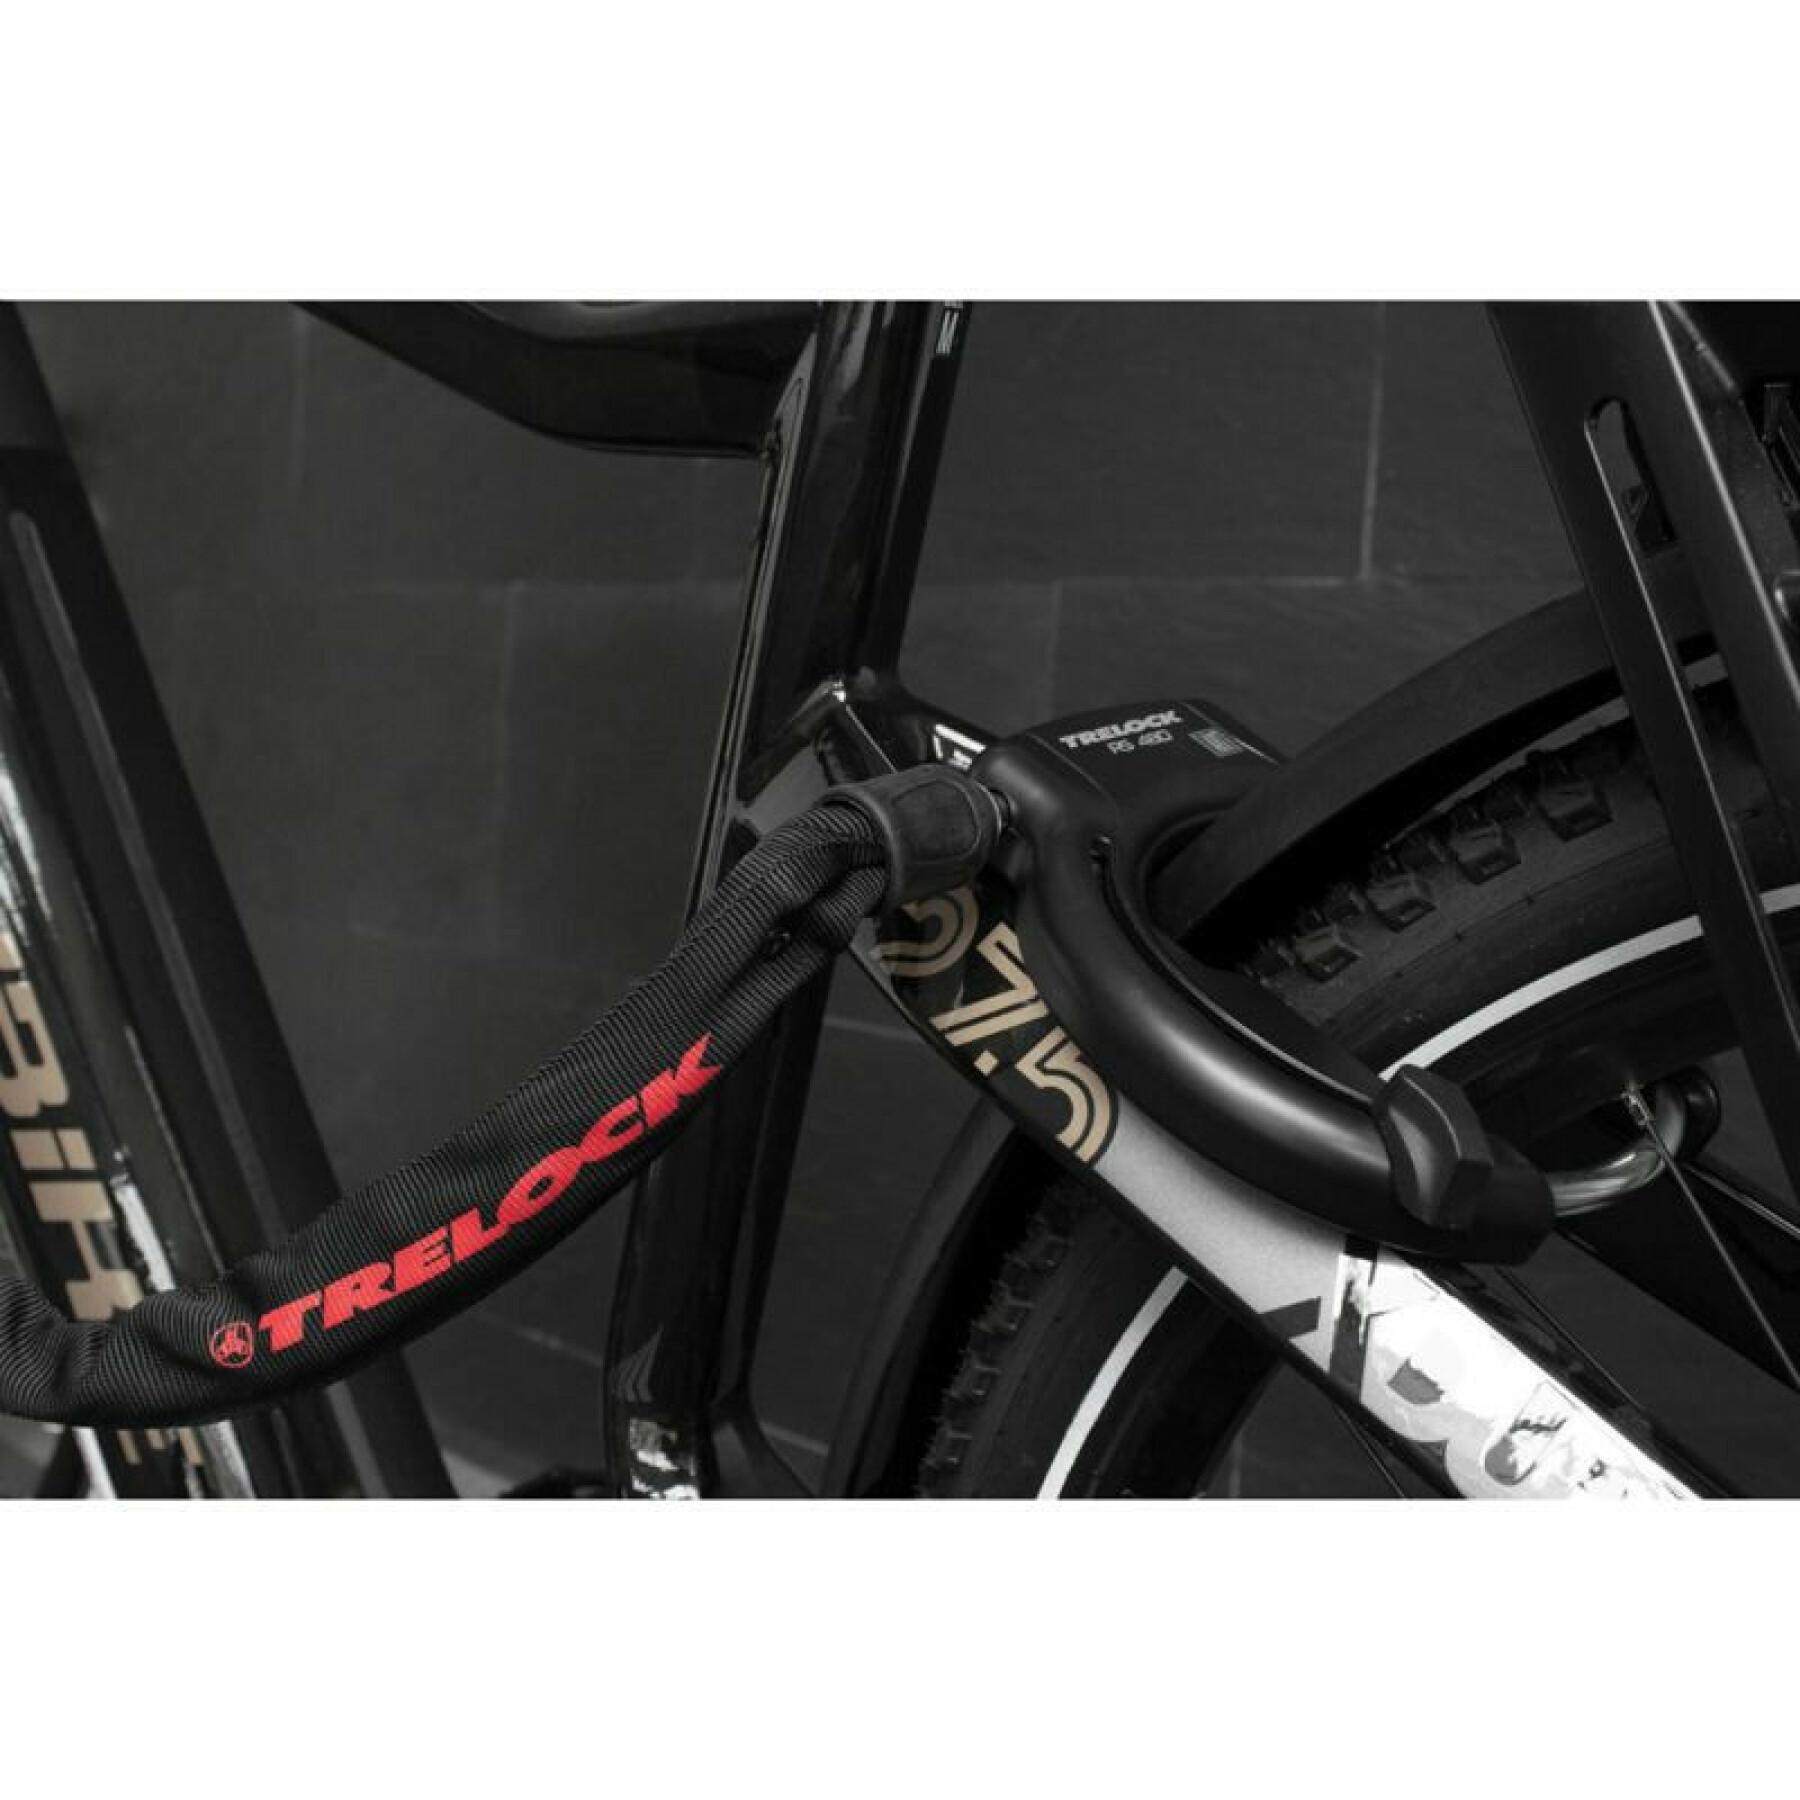 Hufeisenförmiges Fahrradschloss mit einer Rahmenbreite von 89 mm bis 112 mm (Reifenabstand 75 mm) Trelock RS480